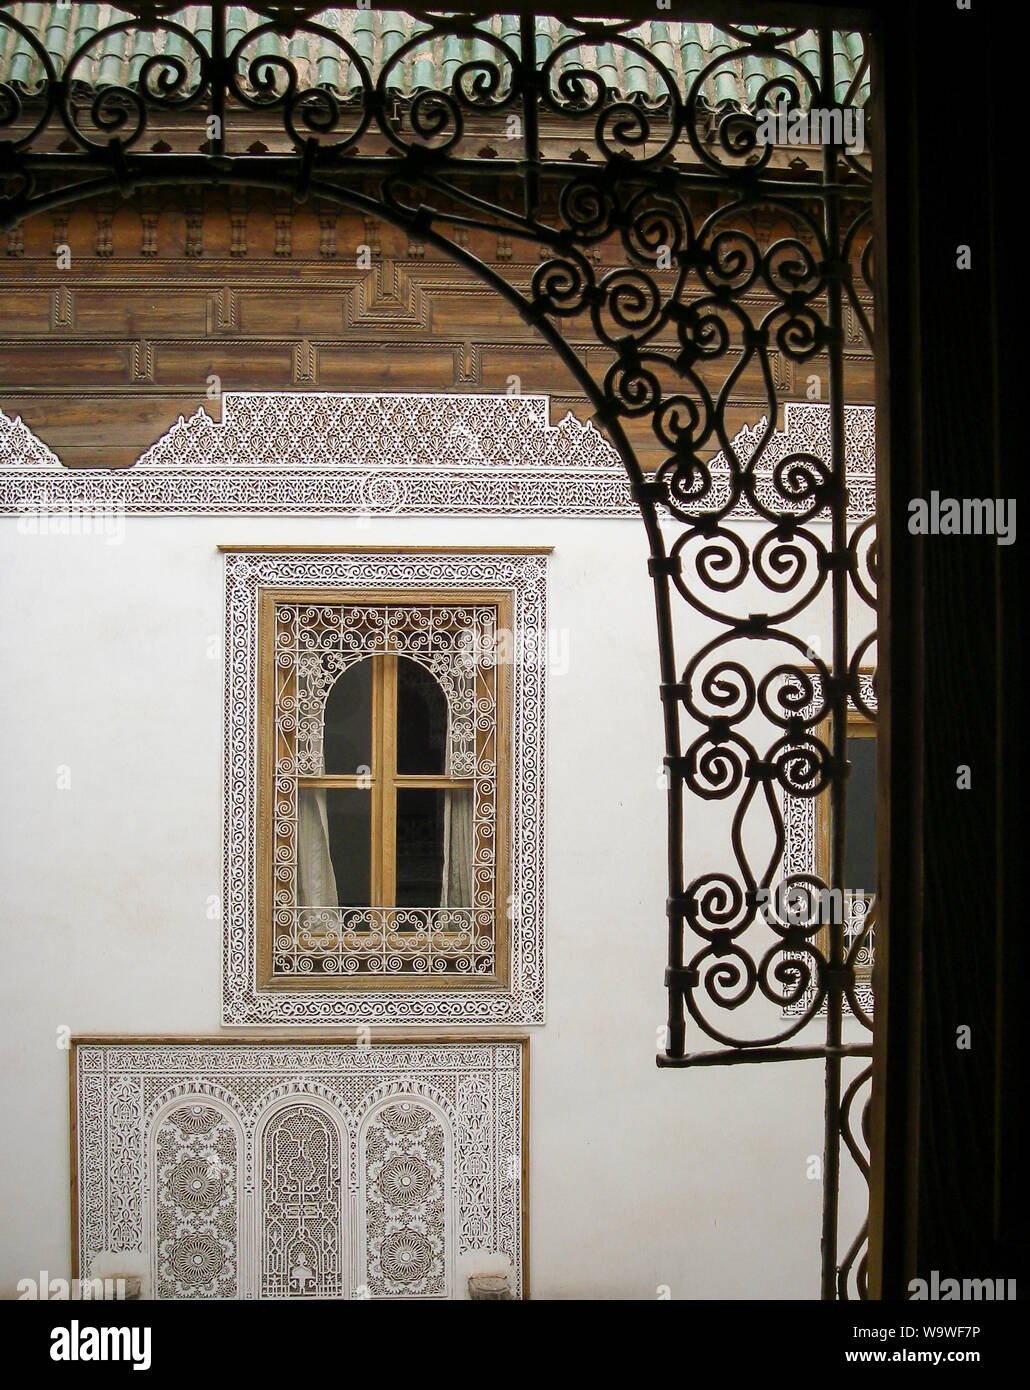 Marrakech, Maroc April 02,2010 : façade dans une cour d'une maison arabe traditionnelle Riad avec windows Banque D'Images